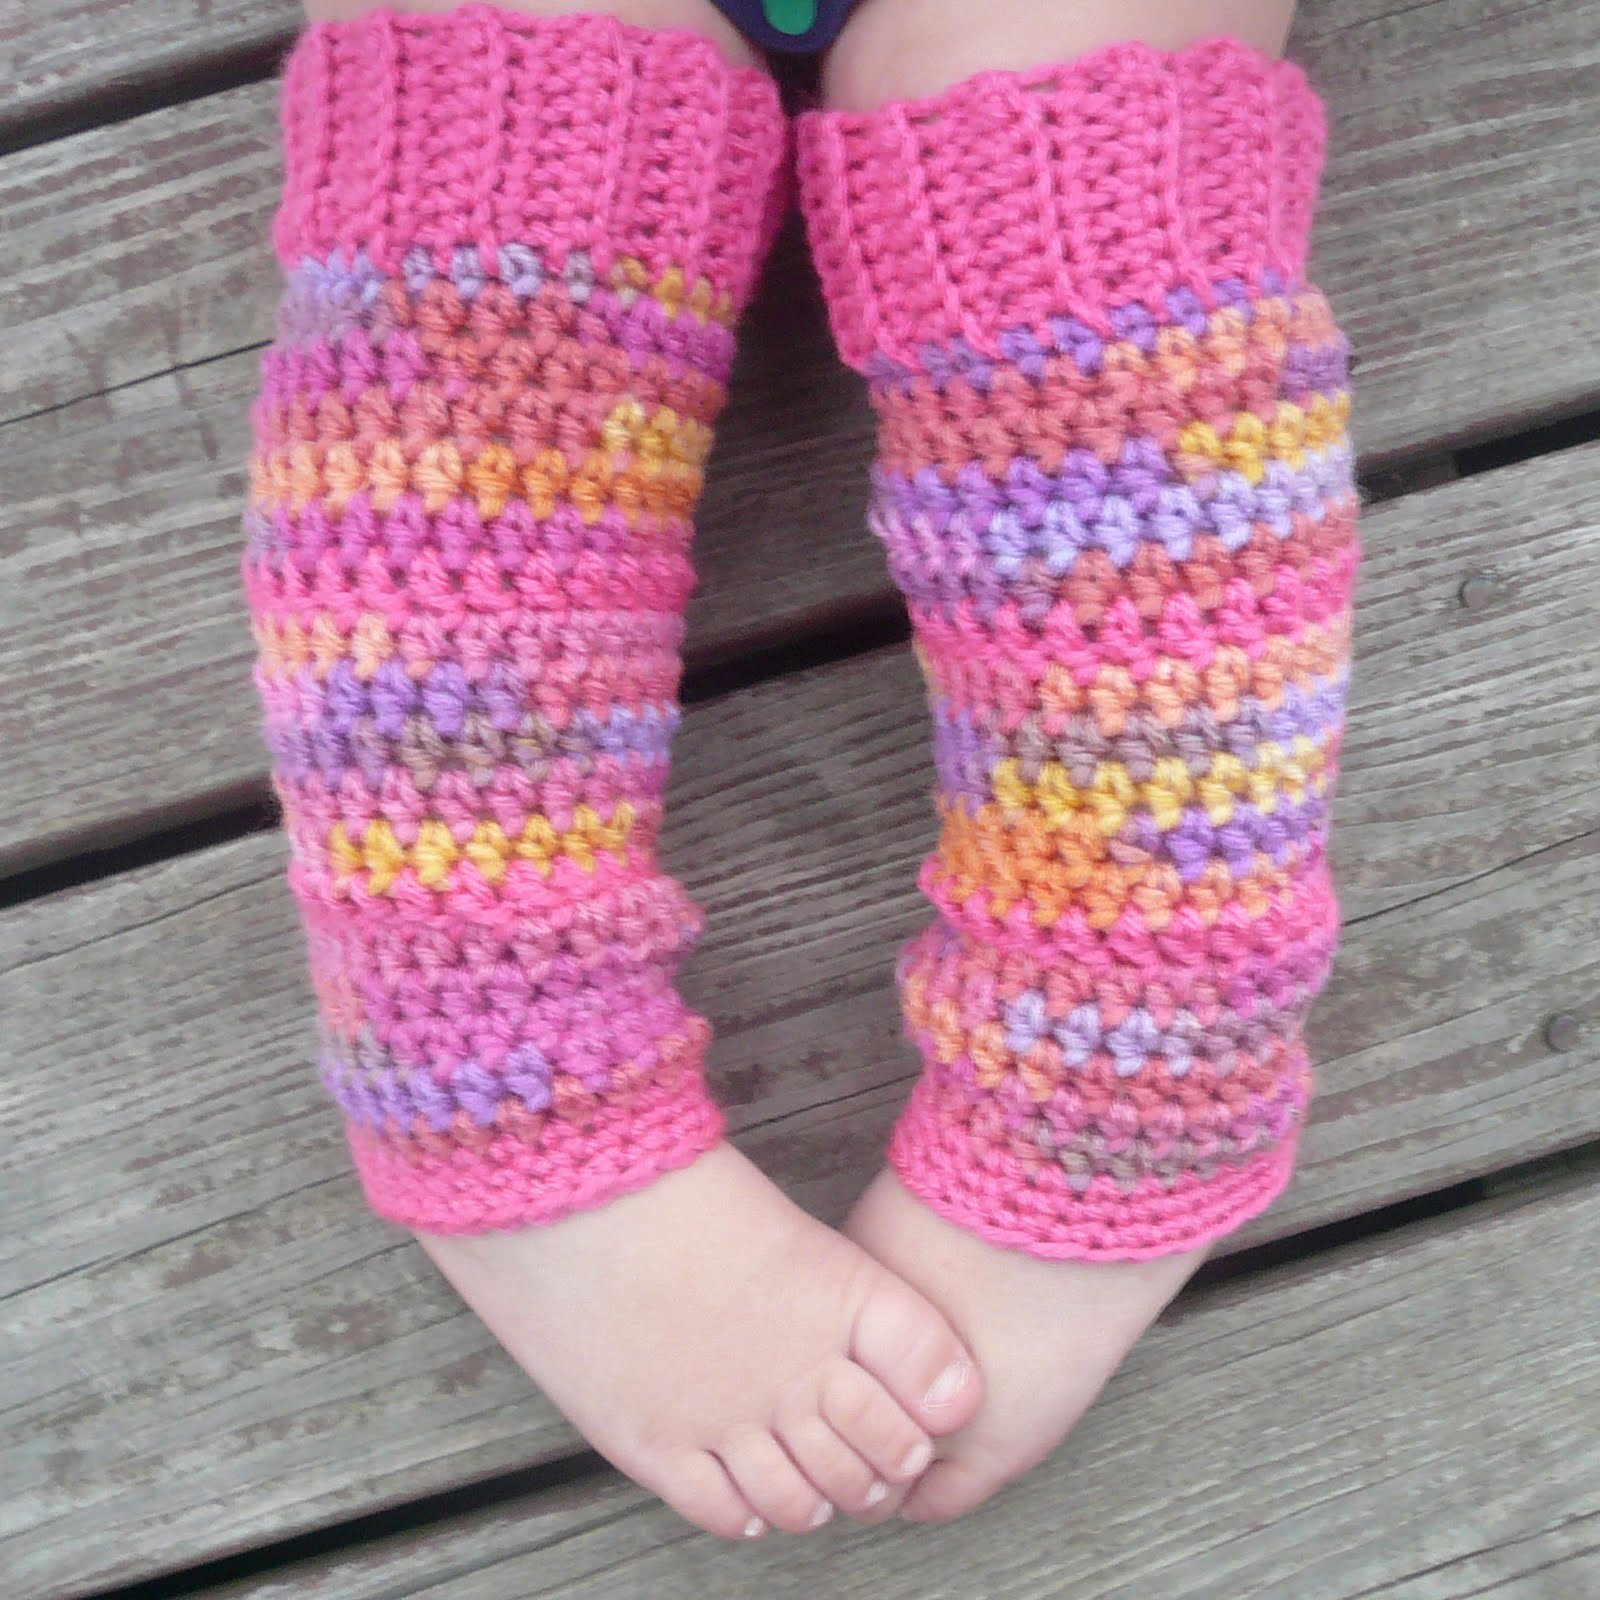 FREE WILLY WARMER CROCHET PATTERN Easy Crochet Patterns